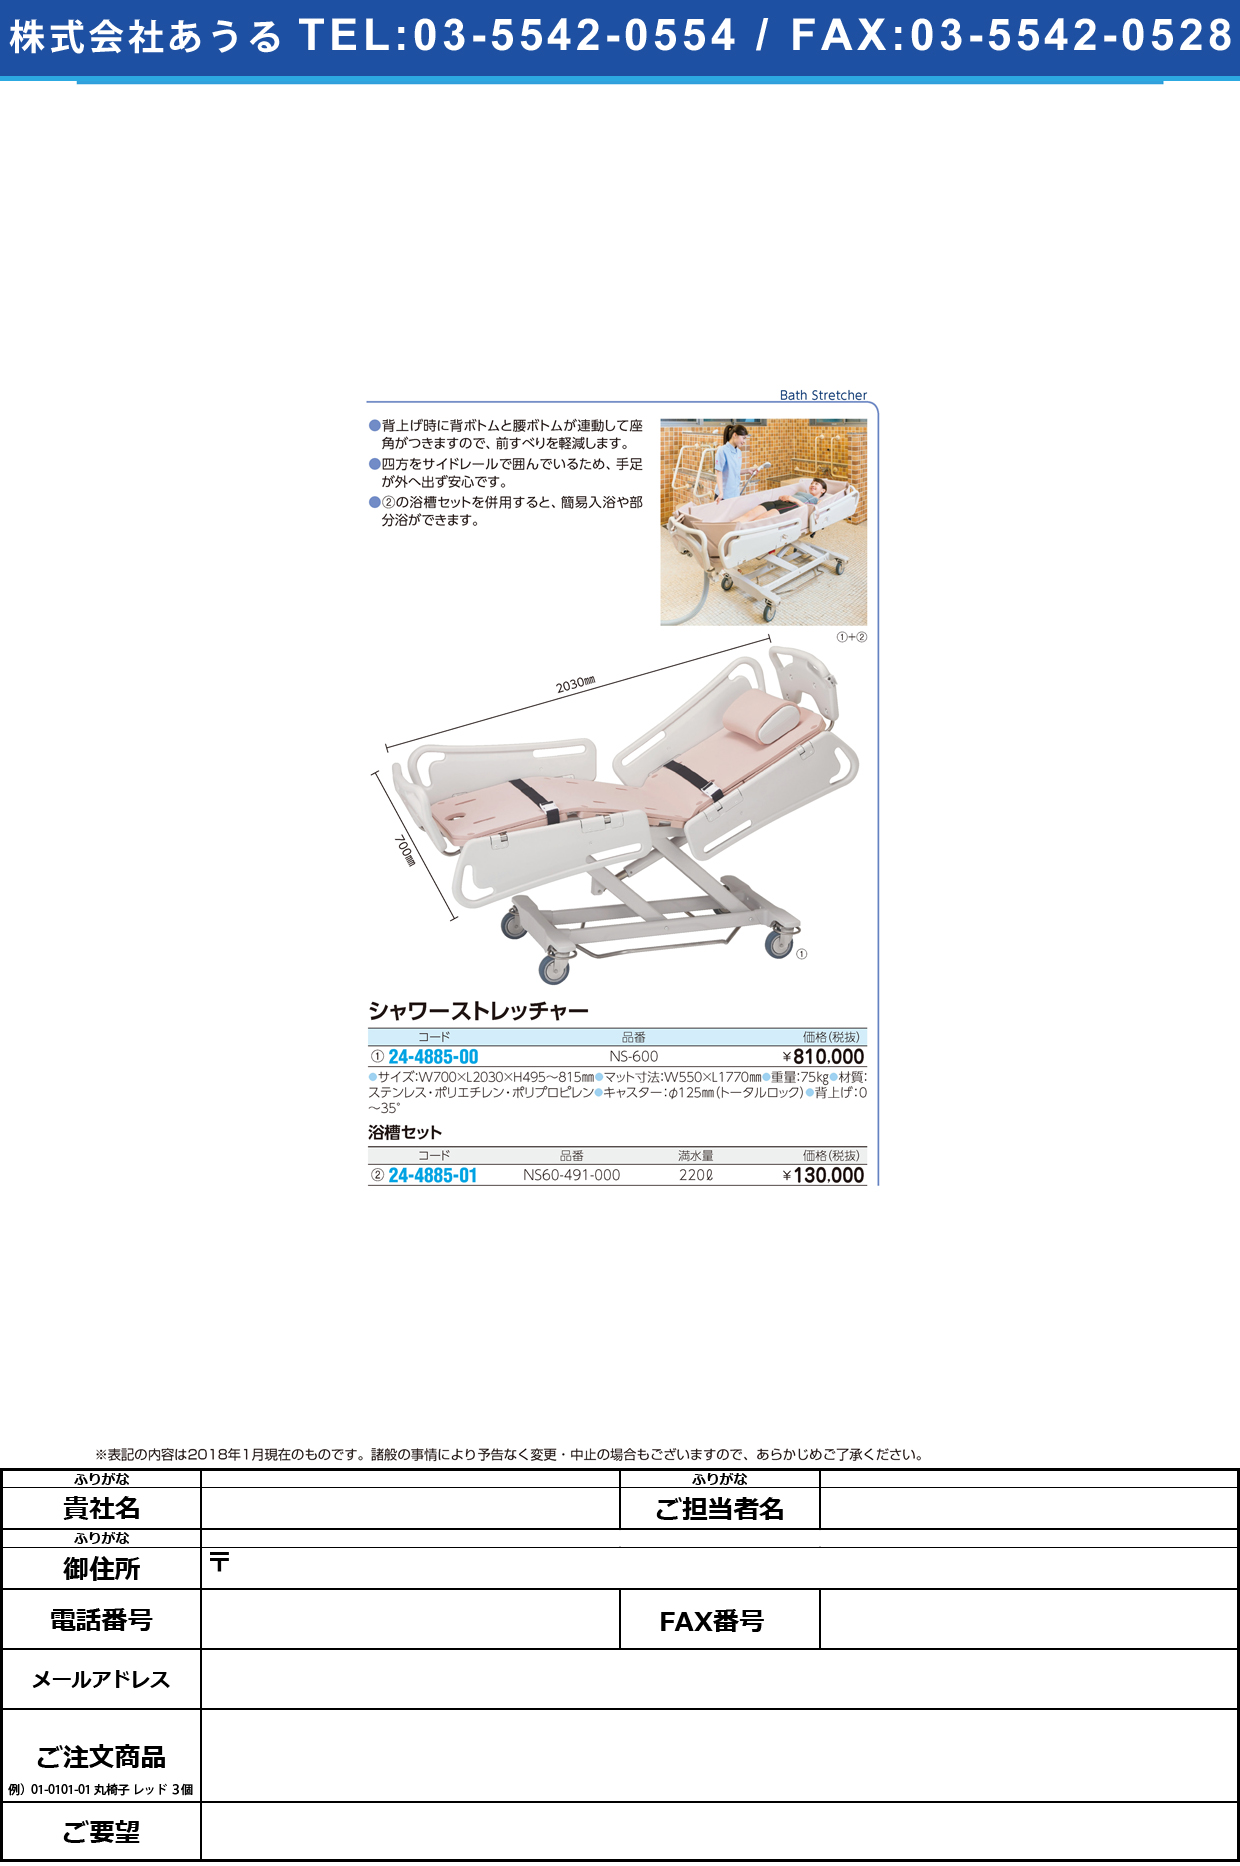 (24-4885-00)シャワーストレッチャー NS-600 ｼｬﾜｰｽﾄﾚｯﾁｬｰ(いうら)【1台単位】【2018年カタログ商品】